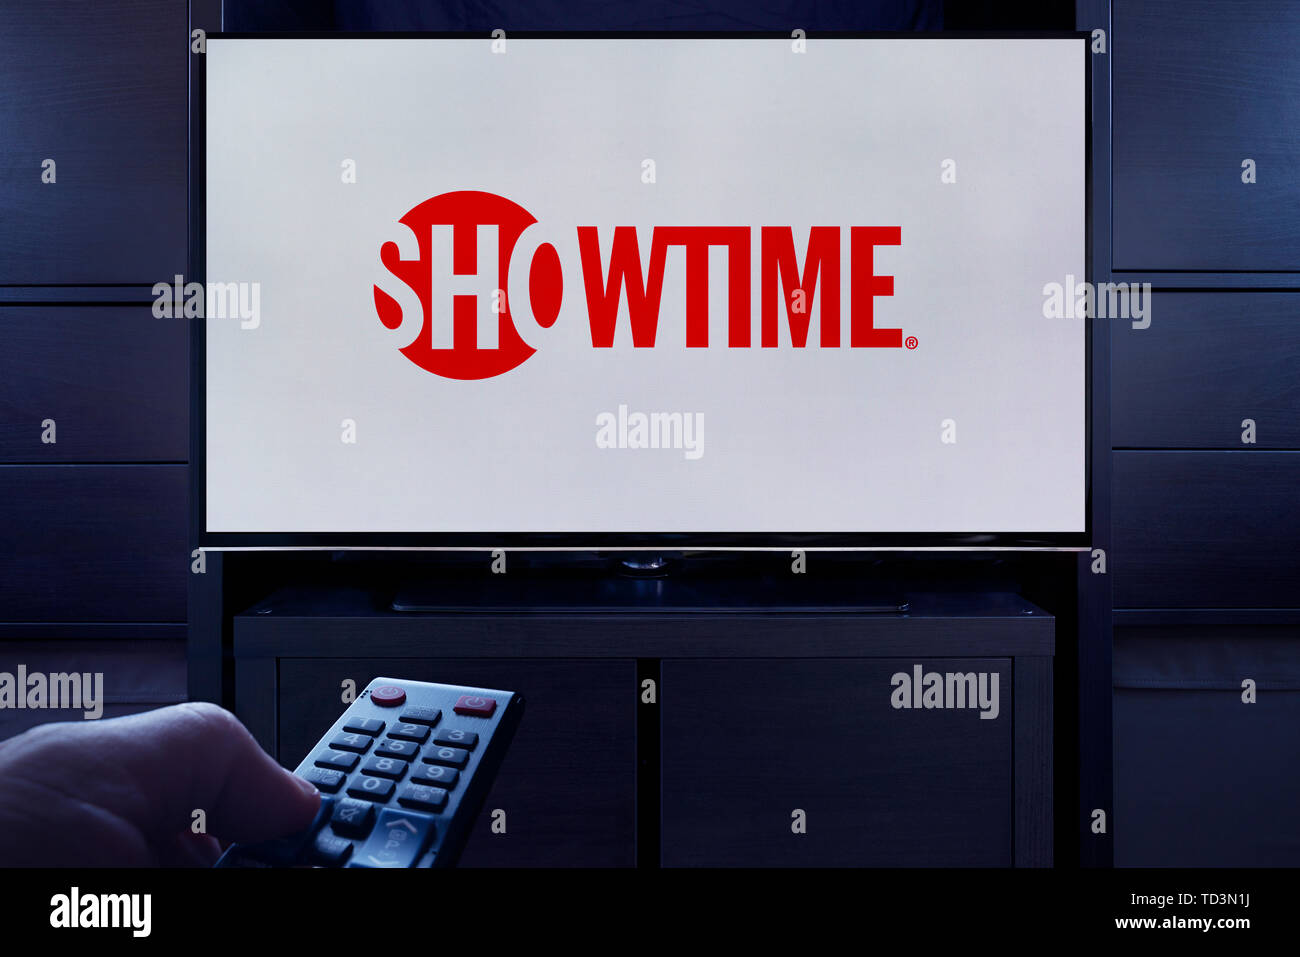 Ein Mann Punkte eine TV-Fernbedienung auf den Fernseher, die zeigt das Logo für den Showtime on demand Video Streaming Service (nur redaktionelle Nutzung). Stockfoto